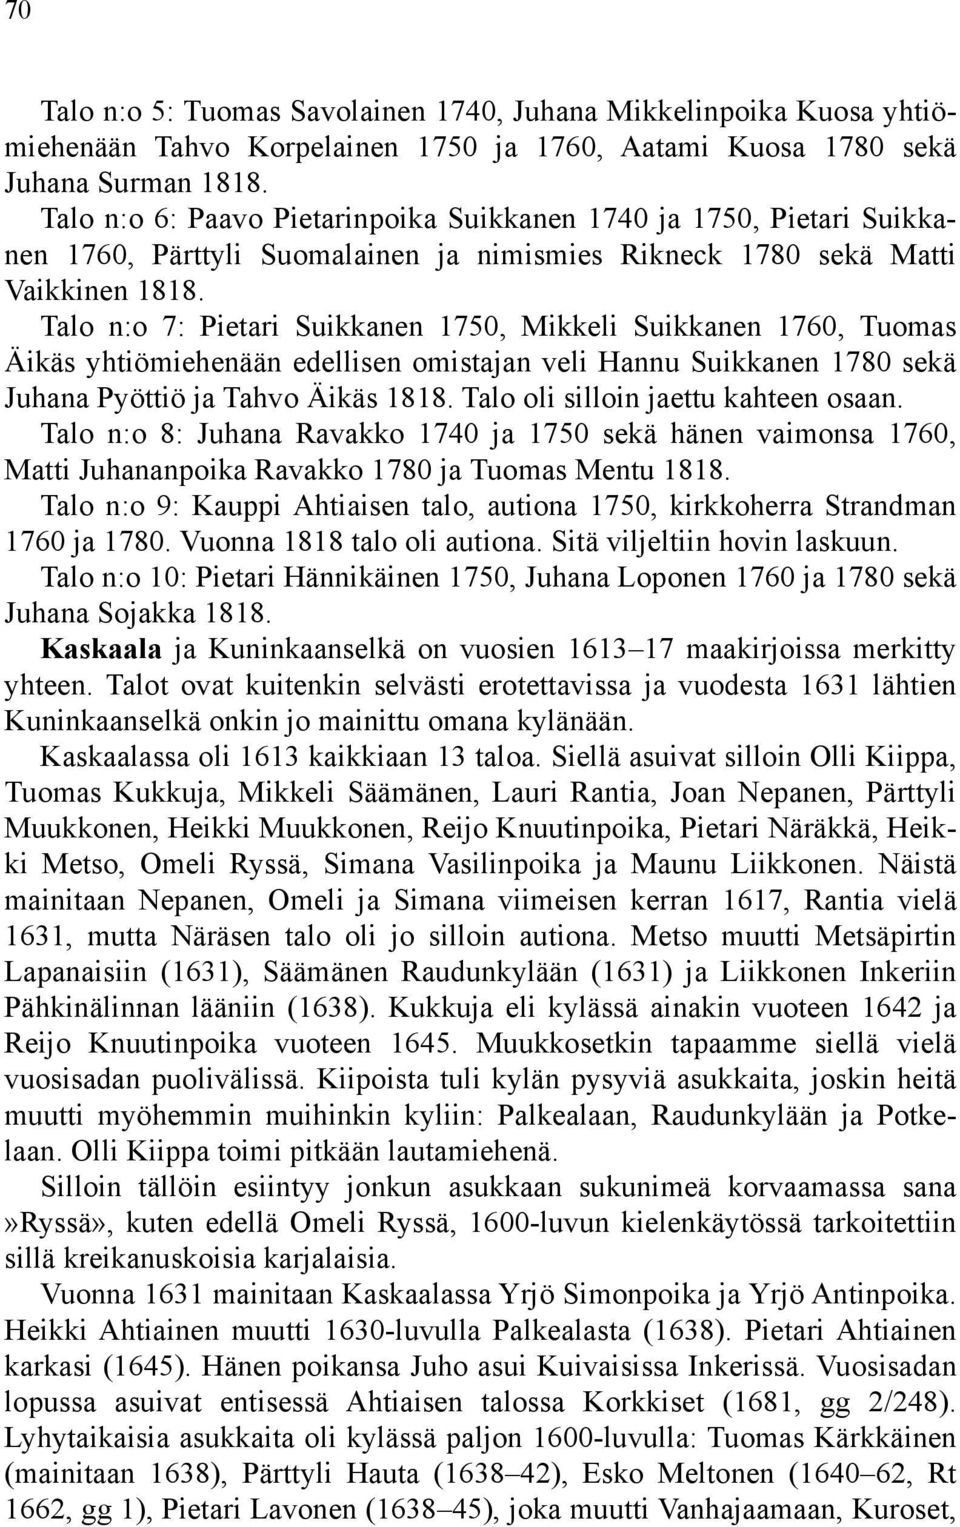 Talo n:o 7: Pietari Suikkanen 1750, Mikkeli Suikkanen 1760, Tuomas Äikäs yhtiömiehenään edellisen omistajan veli Hannu Suikkanen 1780 sekä Juhana Pyöttiö ja Tahvo Äikäs 1818.